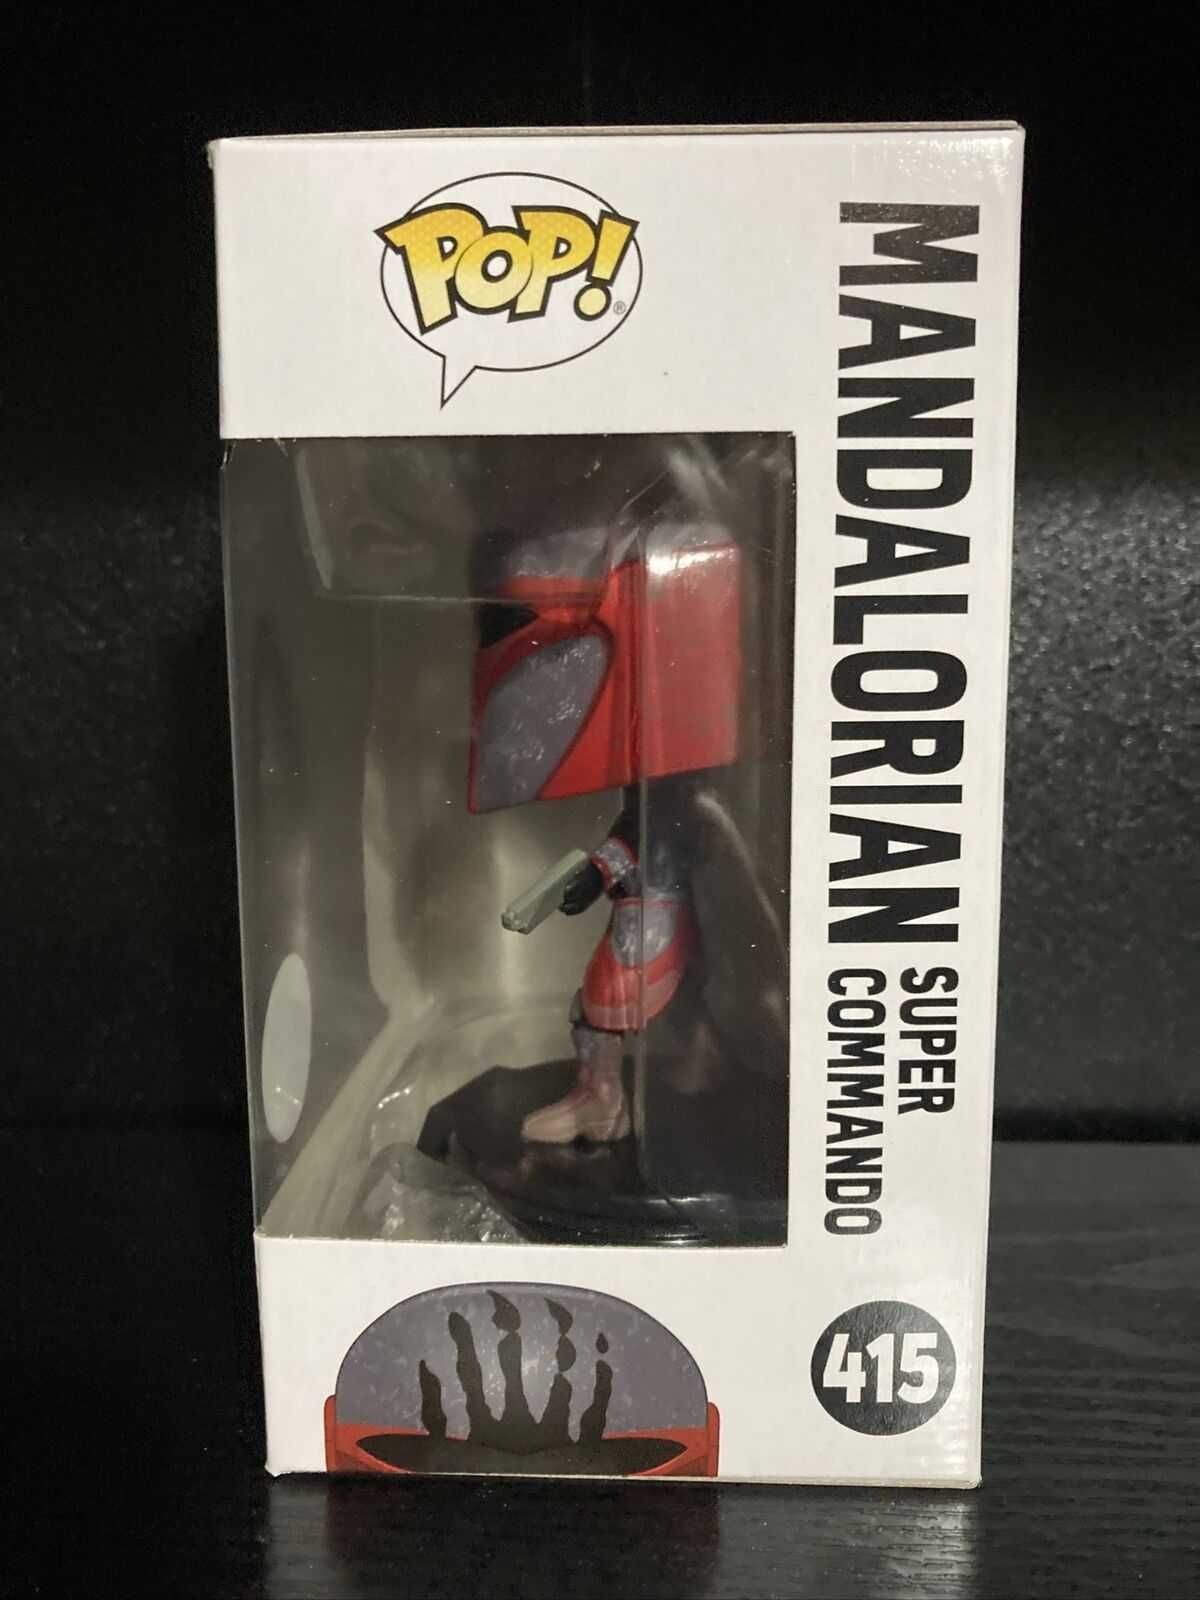 Star Wars 415 Mandalorian Super Comando Limited Edition - Funko Pop!